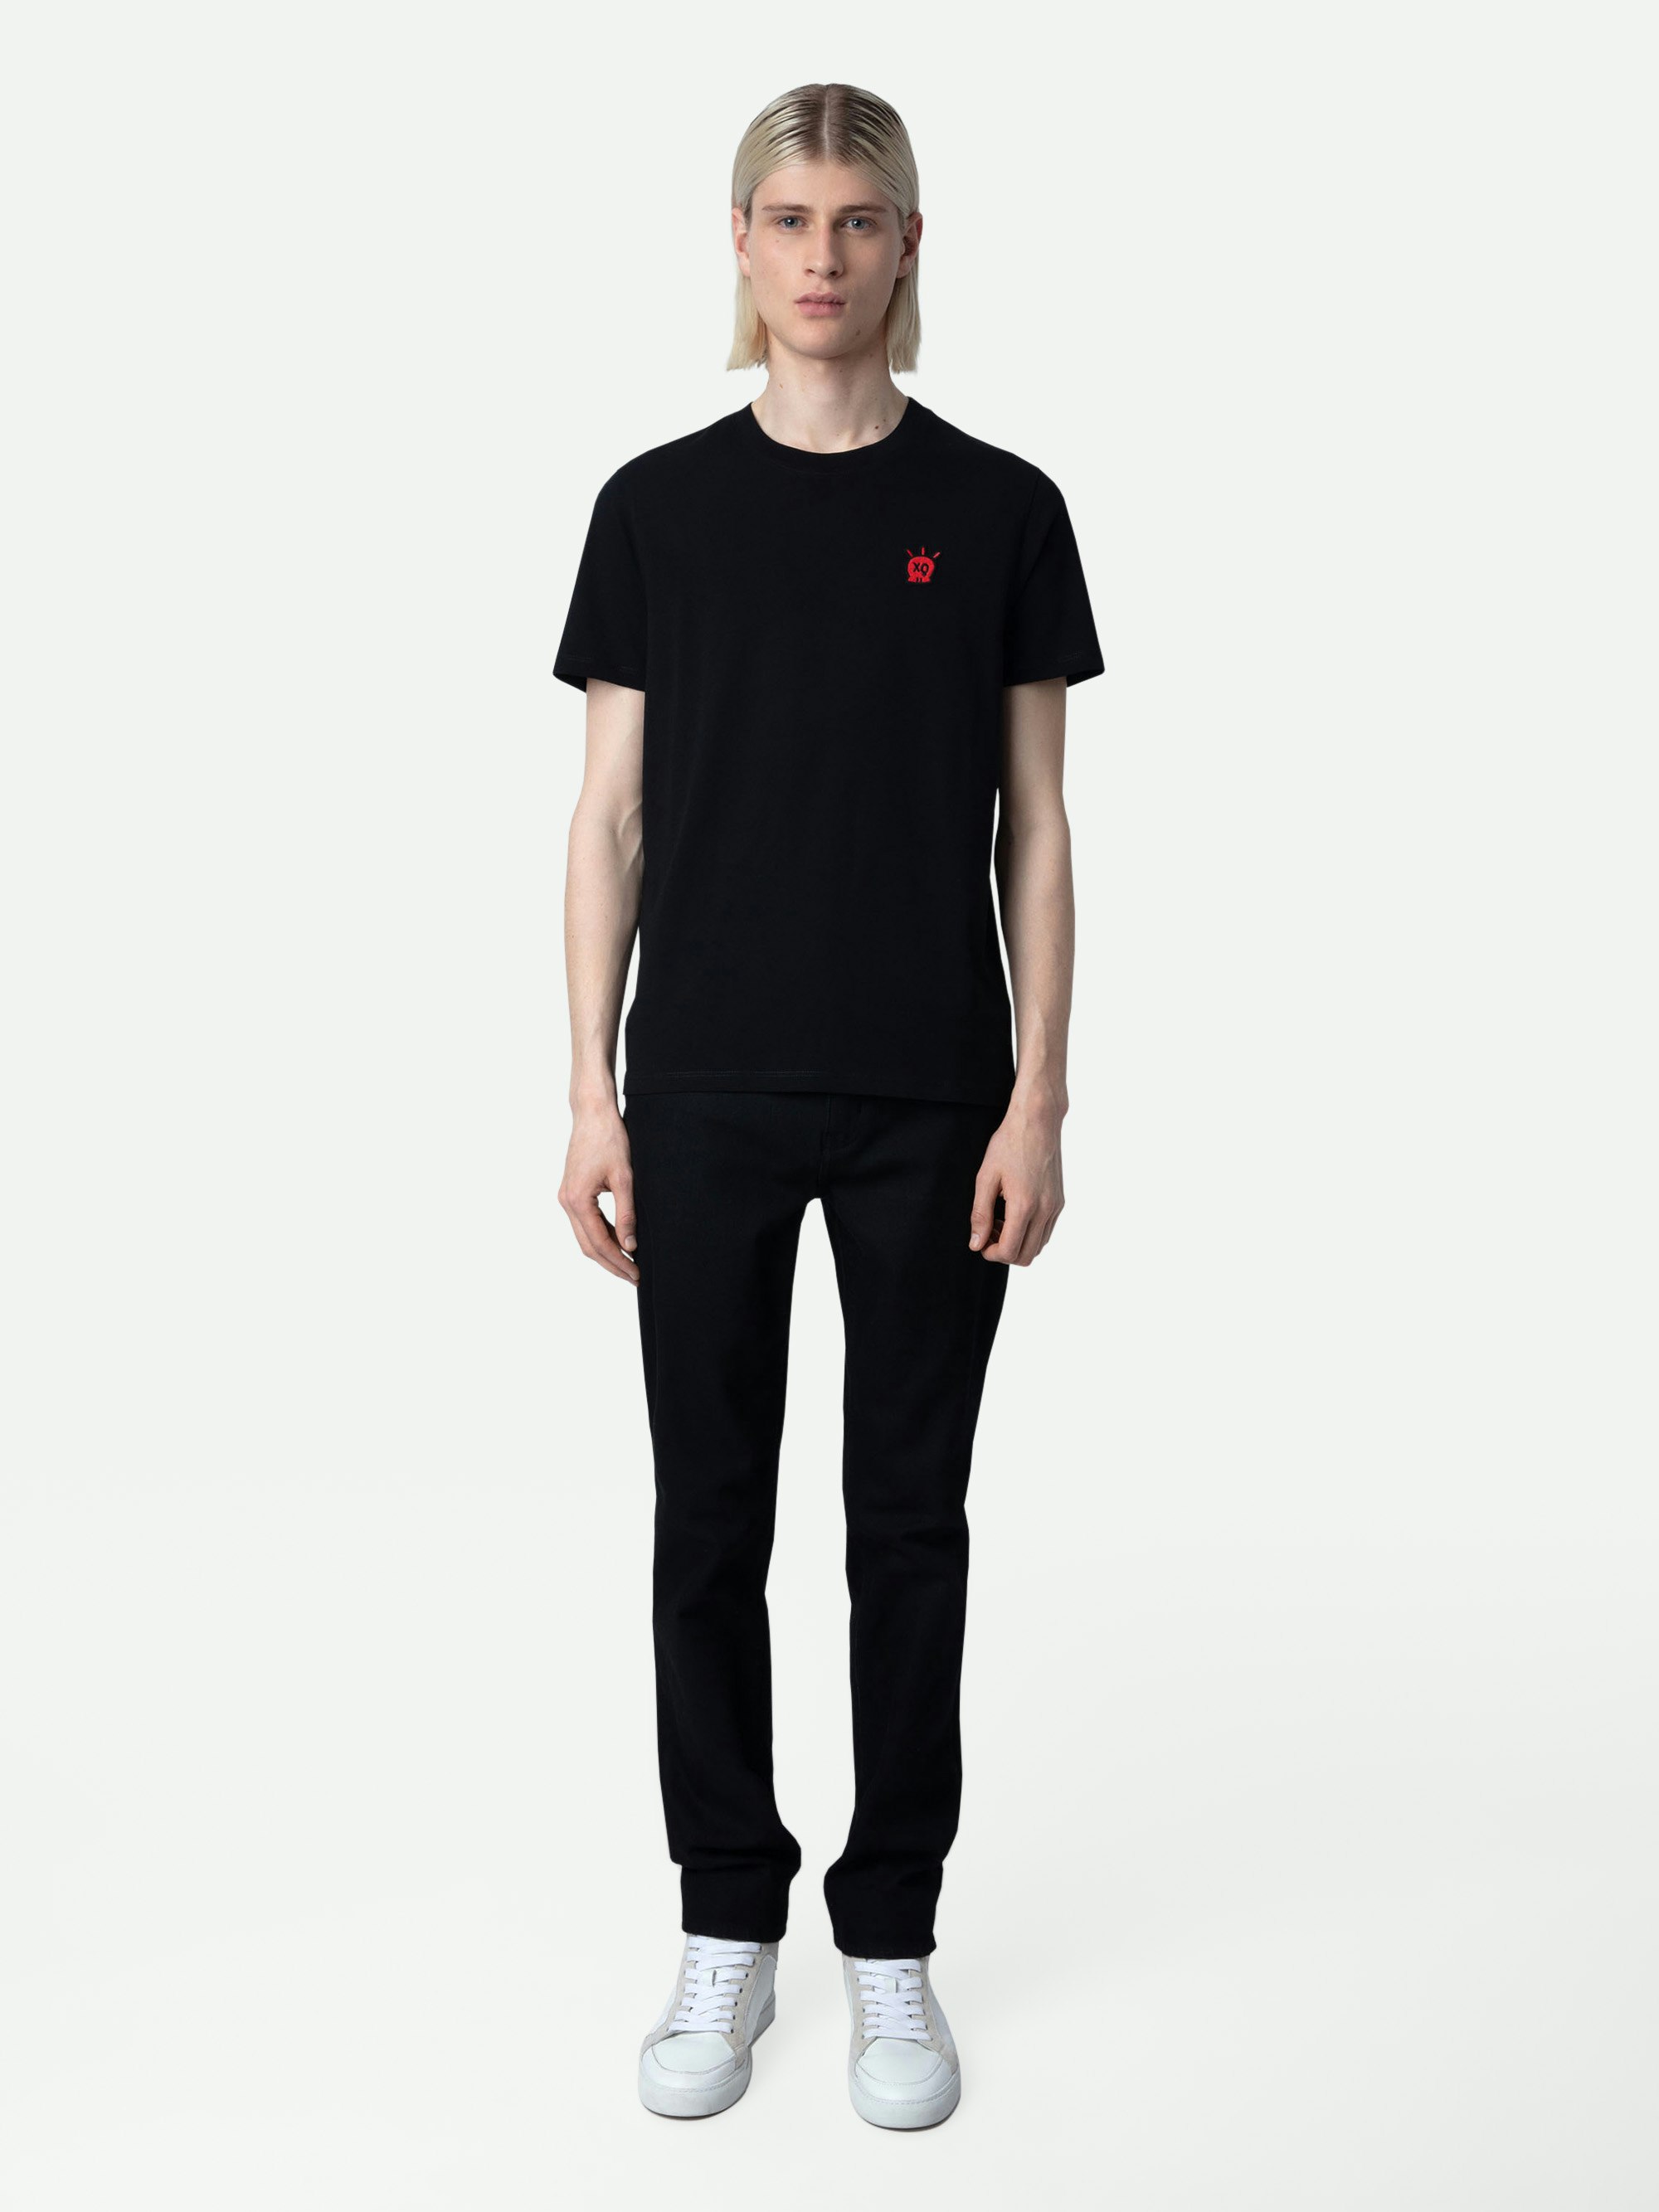 Camiseta Tommy Skull XO - Camiseta negra de algodón para hombre con parche de calavera XO en el pecho.